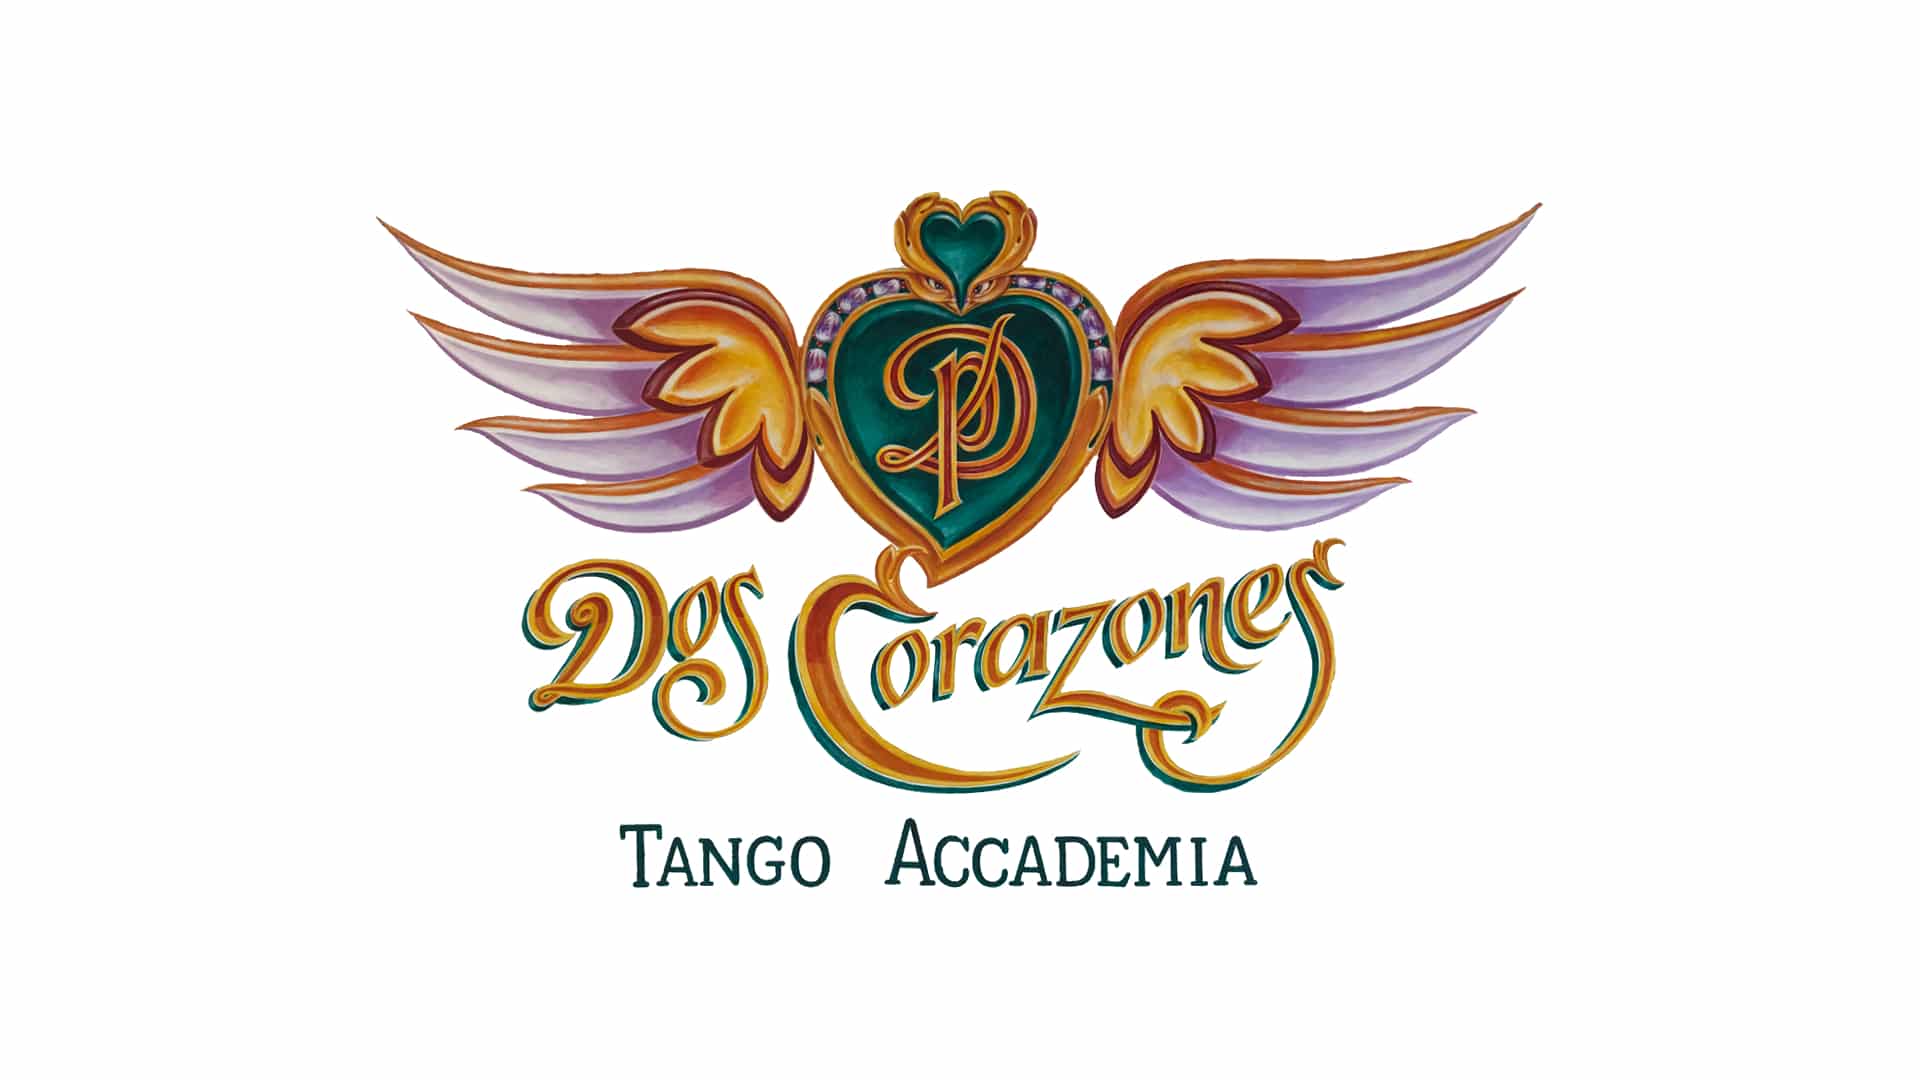 2 Corazones Tango Accademia preview picture